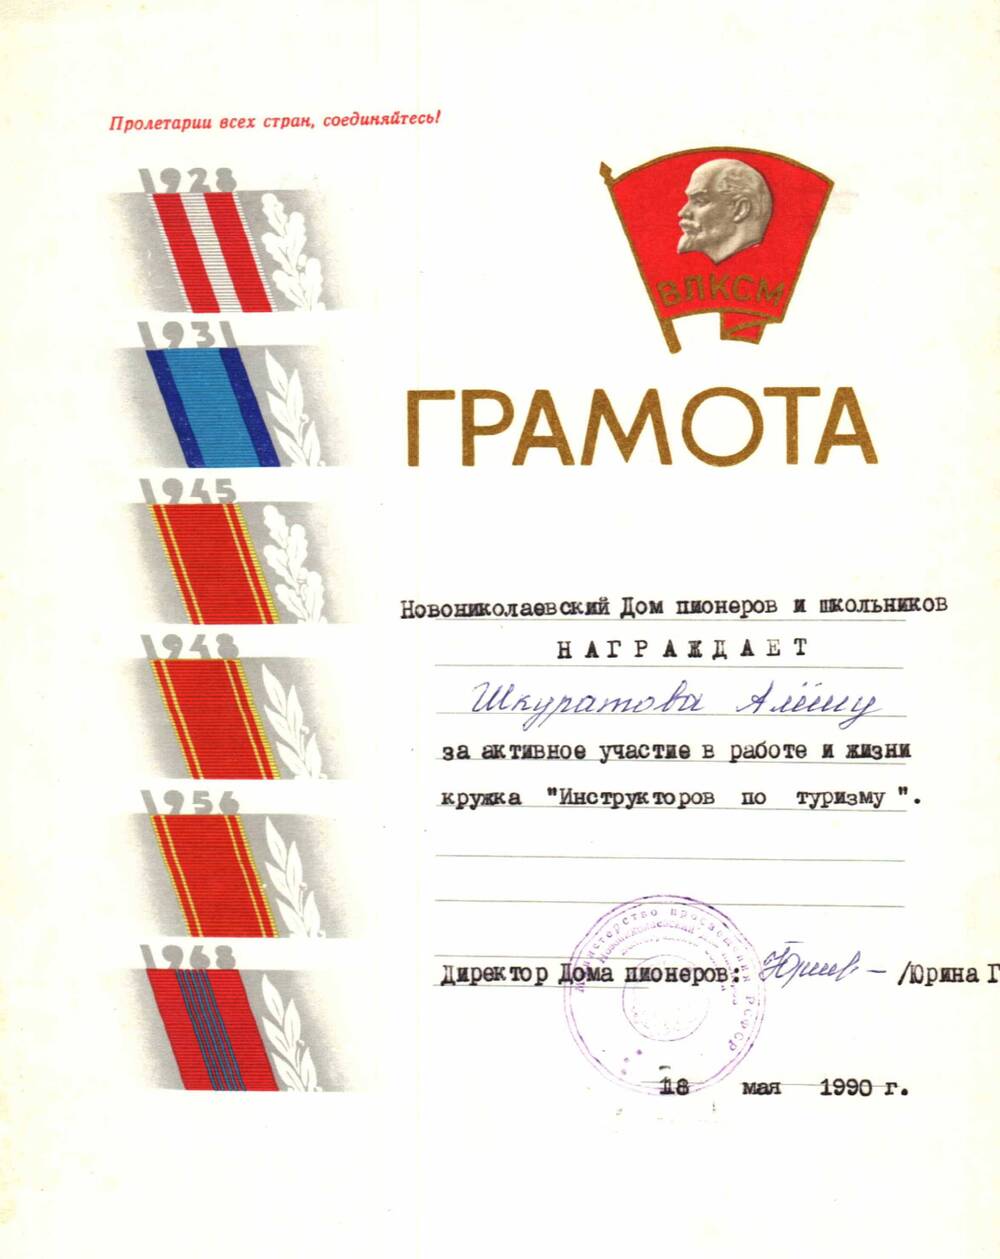 Грамота Шкуратова А. за активное участие в работе кружка Инструктор по туризму, 1990 г.